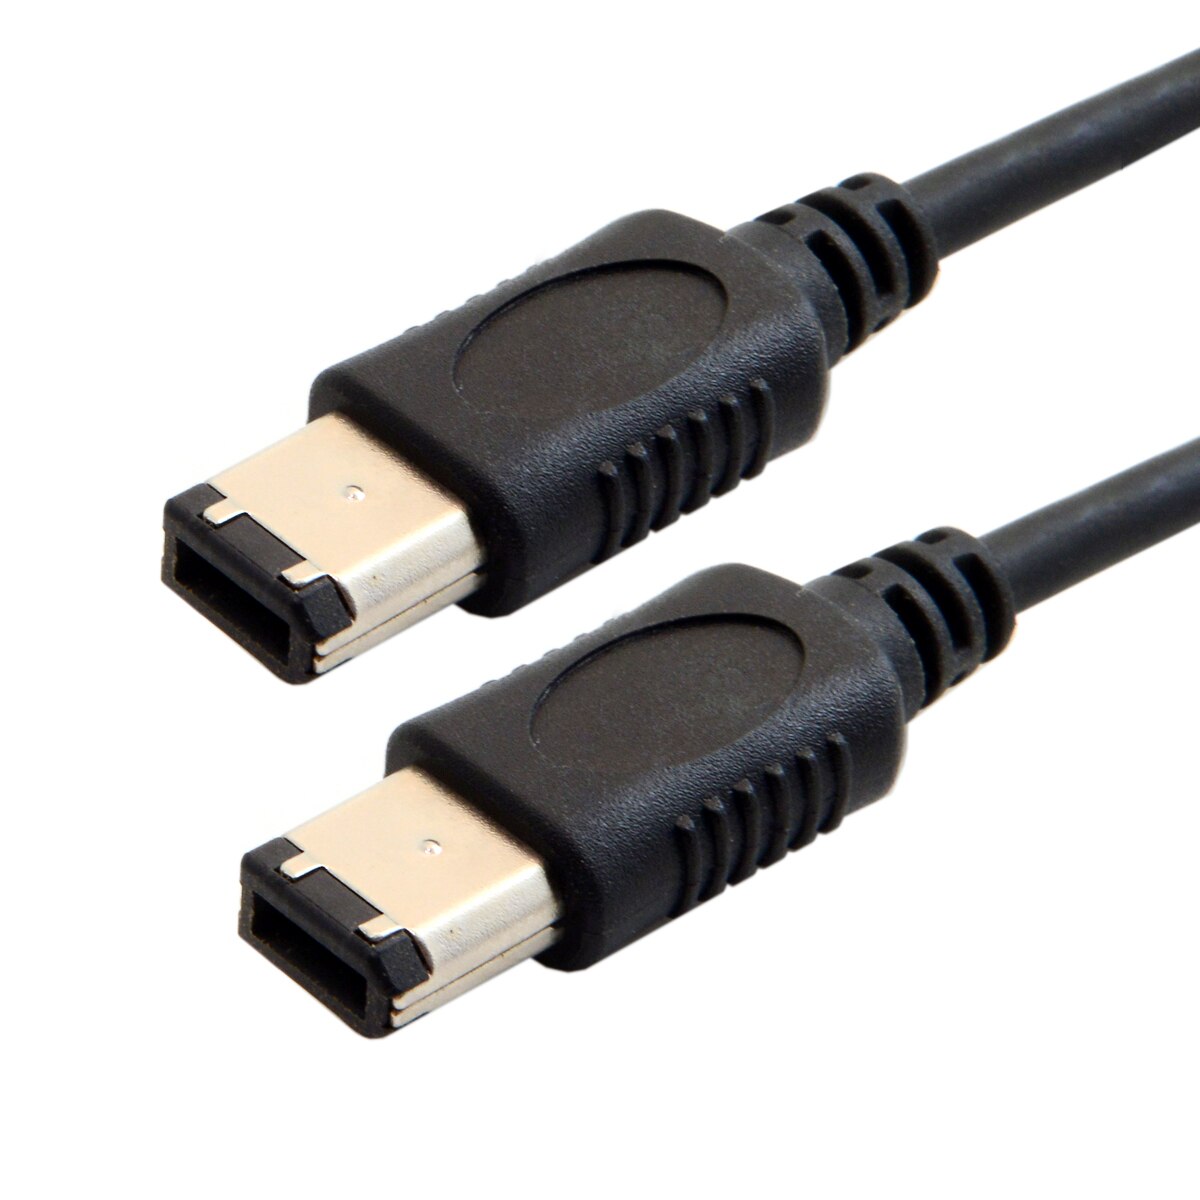 Jimier cy kabel fw -016-1.8m 6 ben 6 pin ieee 1394 ieee 1394 firewire 400 6 6 ilink kabel ieee 1394 1.8m sorte